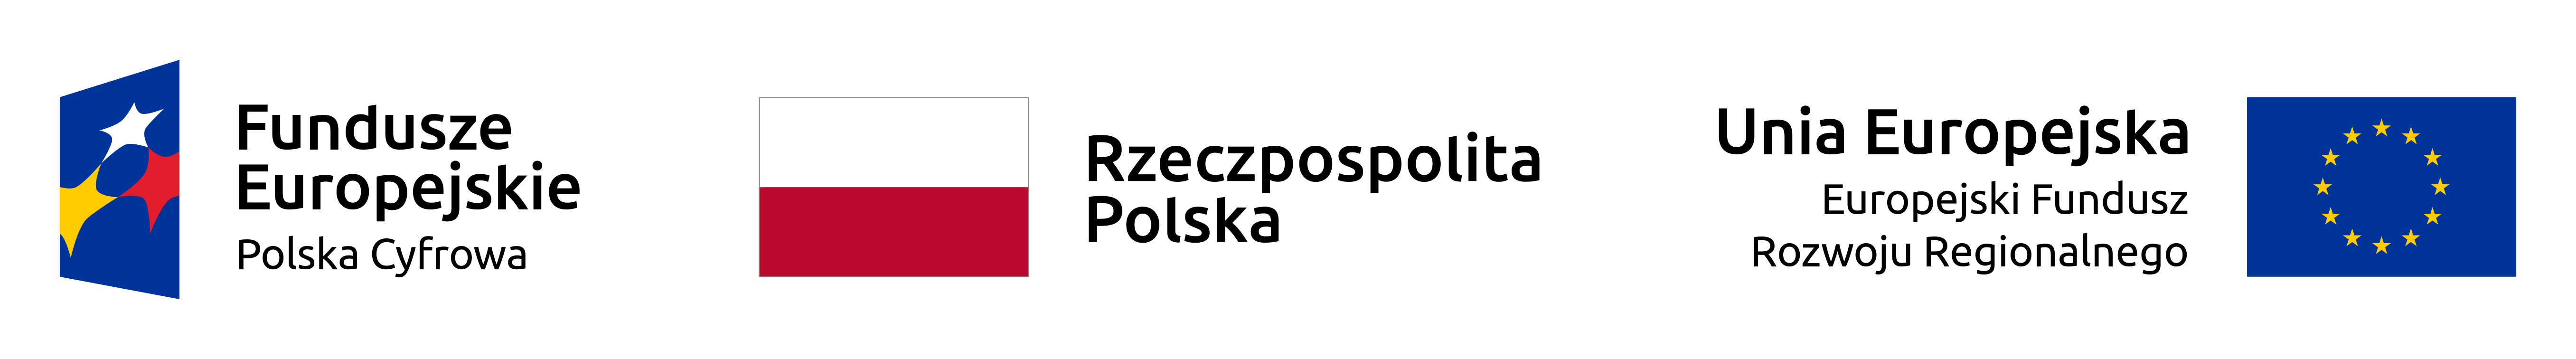 Grafika przedstawia loga: Fundusze Europejskie Polska Cyfrowa, Rzeczpospolita Polska i Unia Europejska Europejski Fundusz Rozwoju Regionalnego